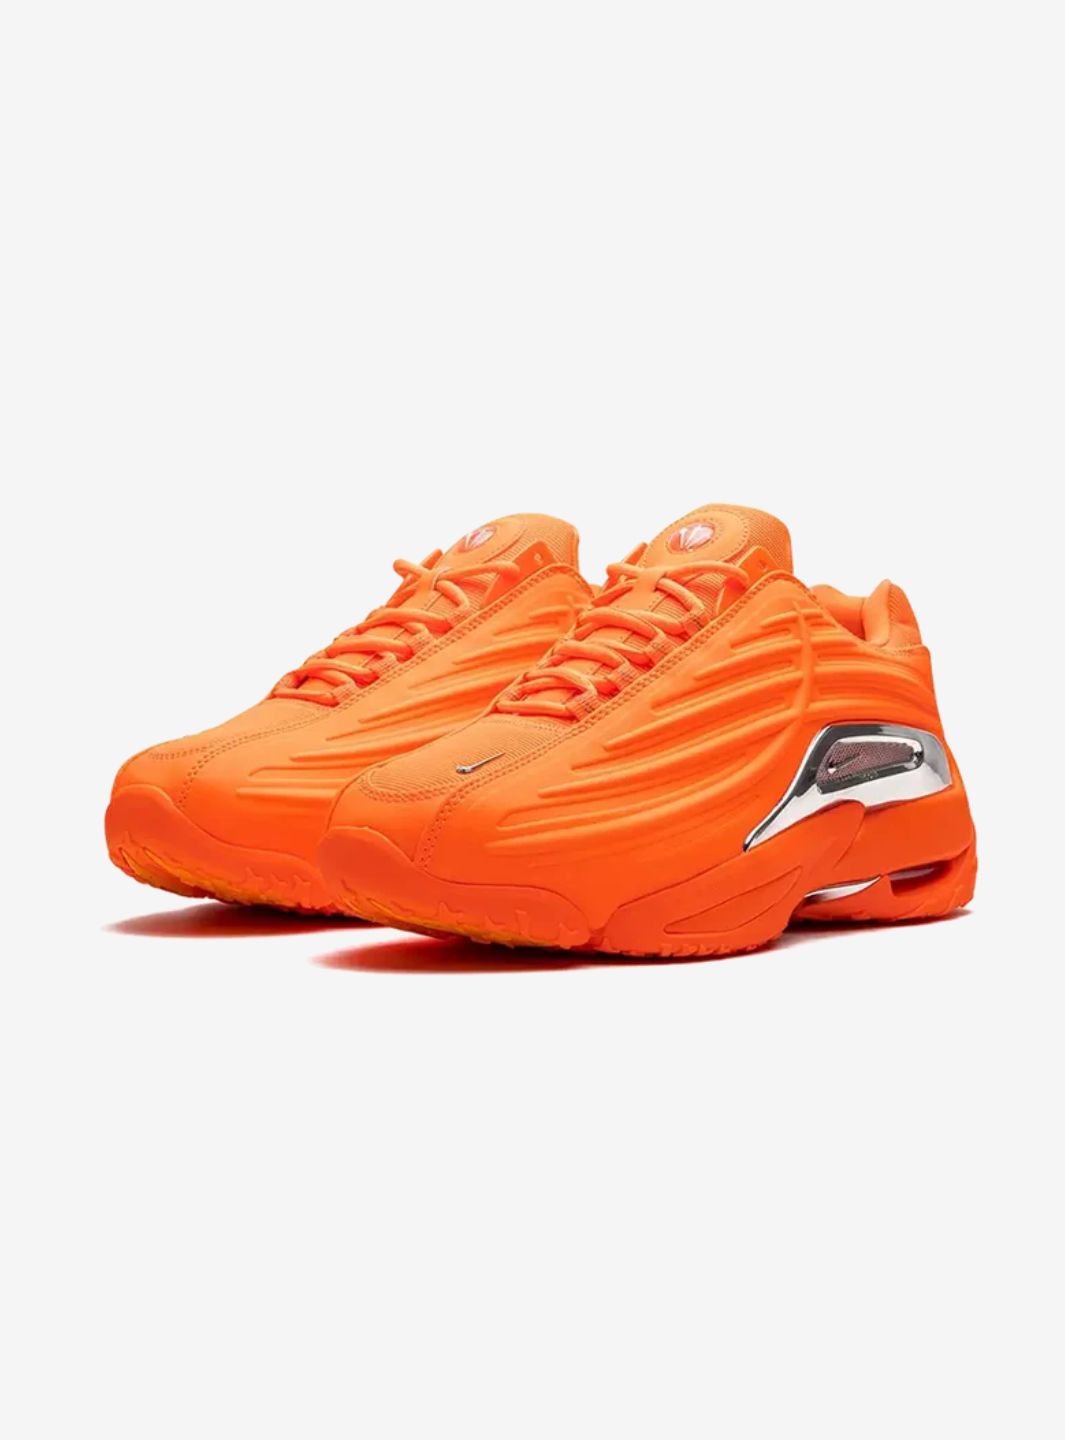 Nike Hot Step 2 Drake NOCTA Total Orange - DZ7293-800 | ResellZone